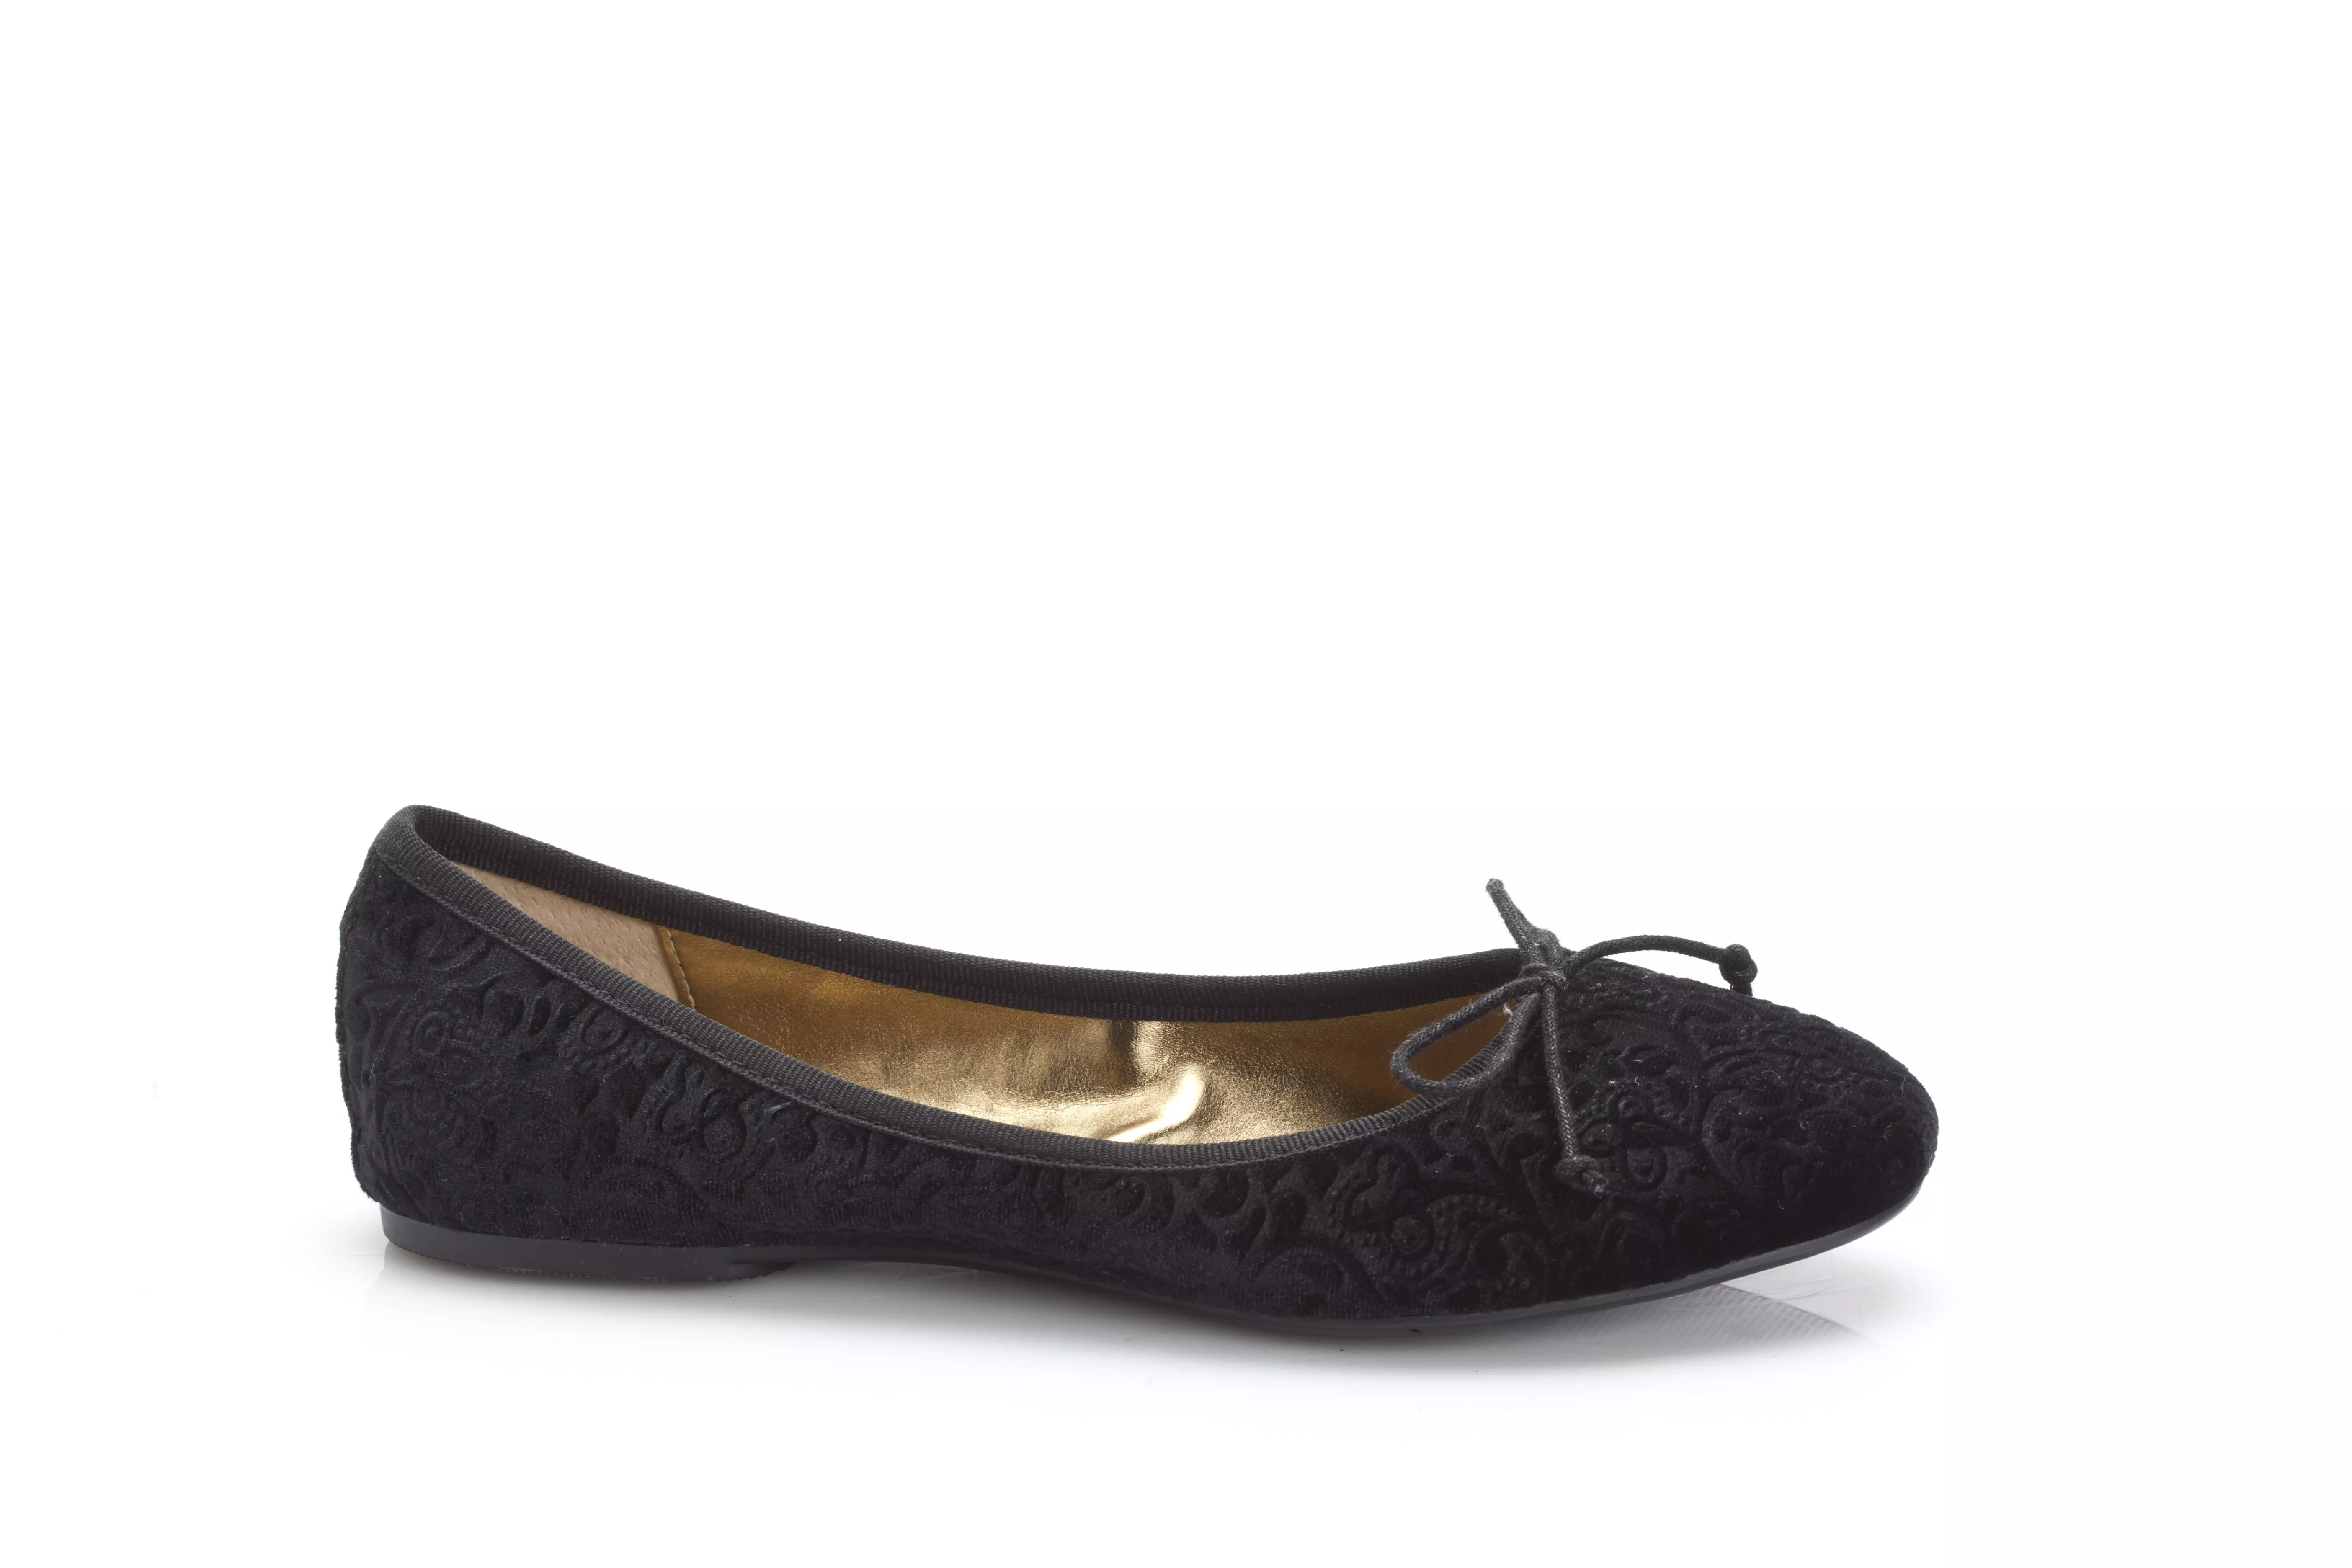 נעלי בובה של ניין ווסט, סתיו/חורף 2013/14. מחיר: 479.90 שקלים (להשיג בחנויות הרשת)